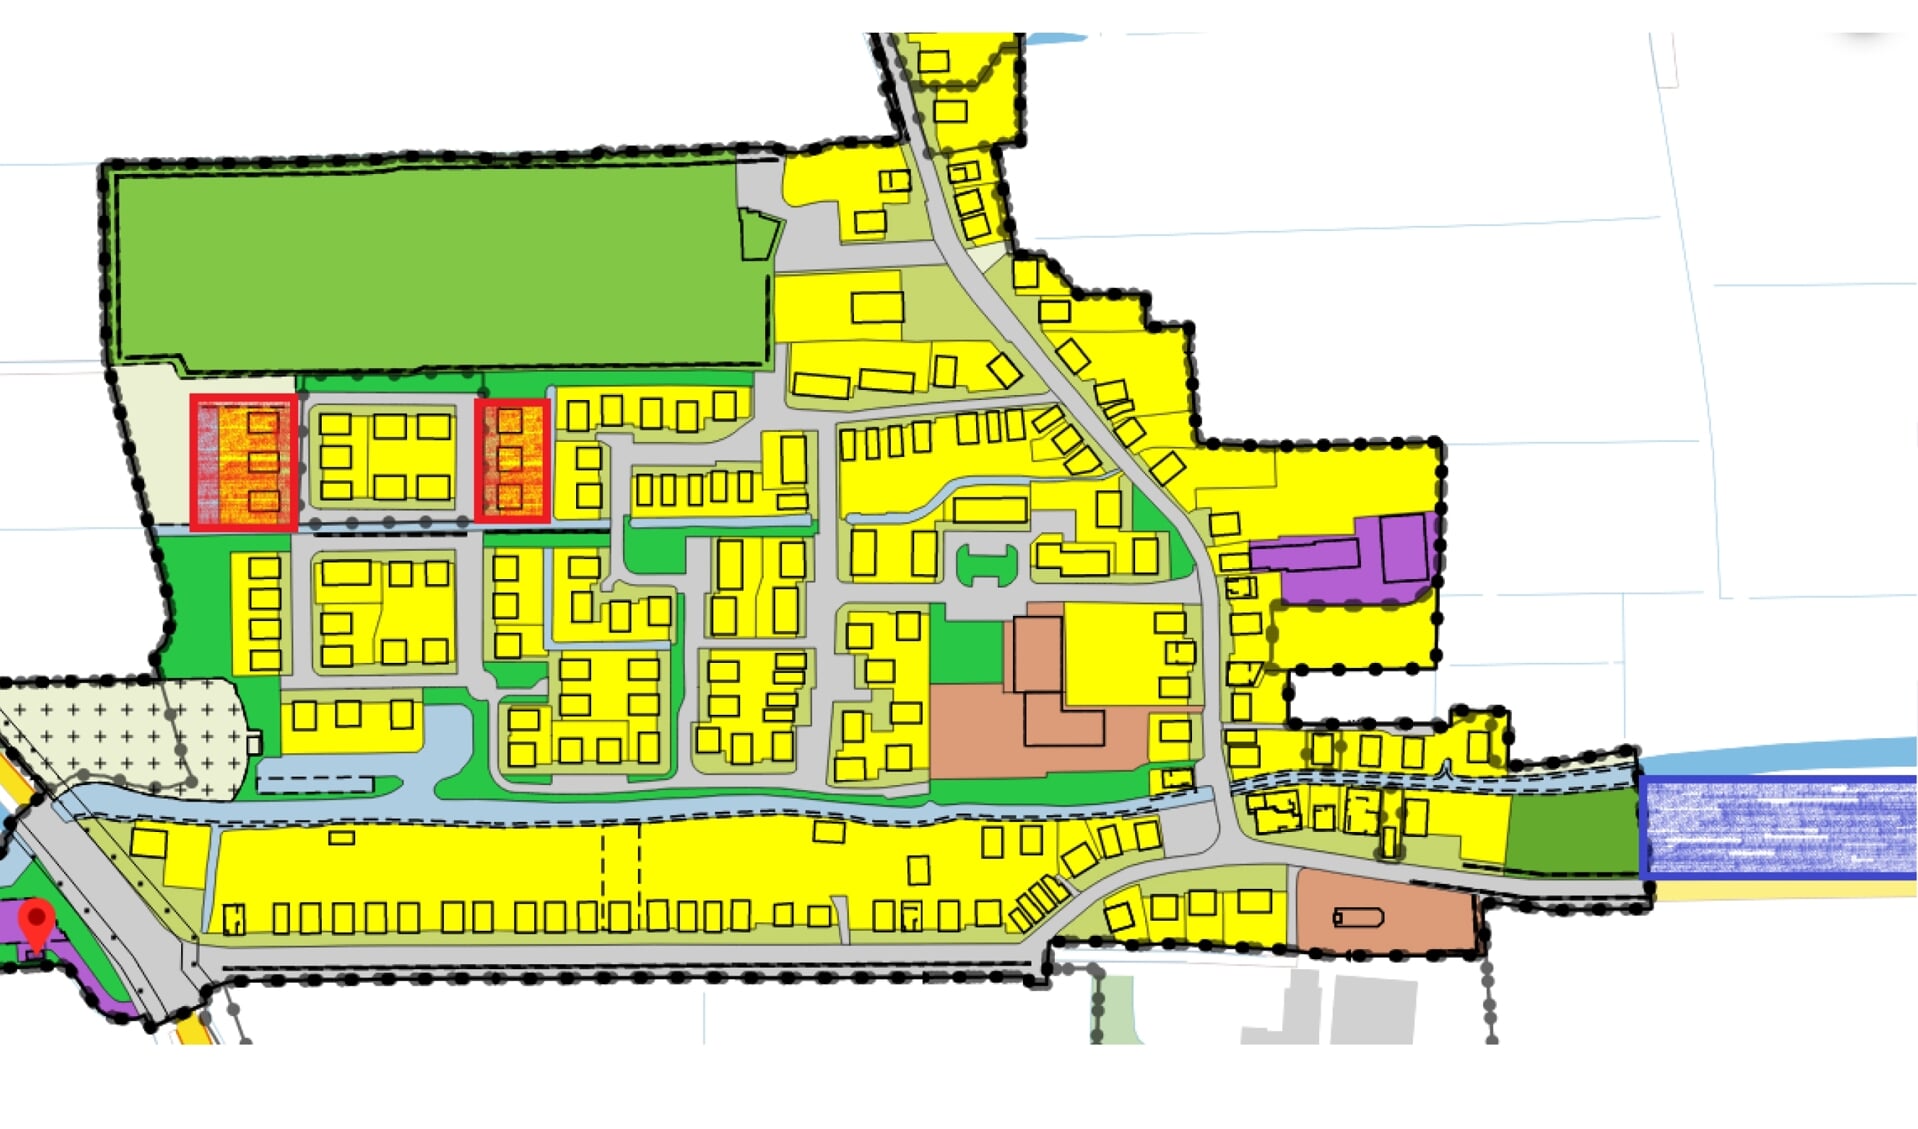 Rechtsonder aan de Slachtedyk bij Ryptsjerk wil R. Hendriks acht woningen bouwen. De gemeente wil er negen (waarvan zes getekend) in de rode gebiedjes linksboven.